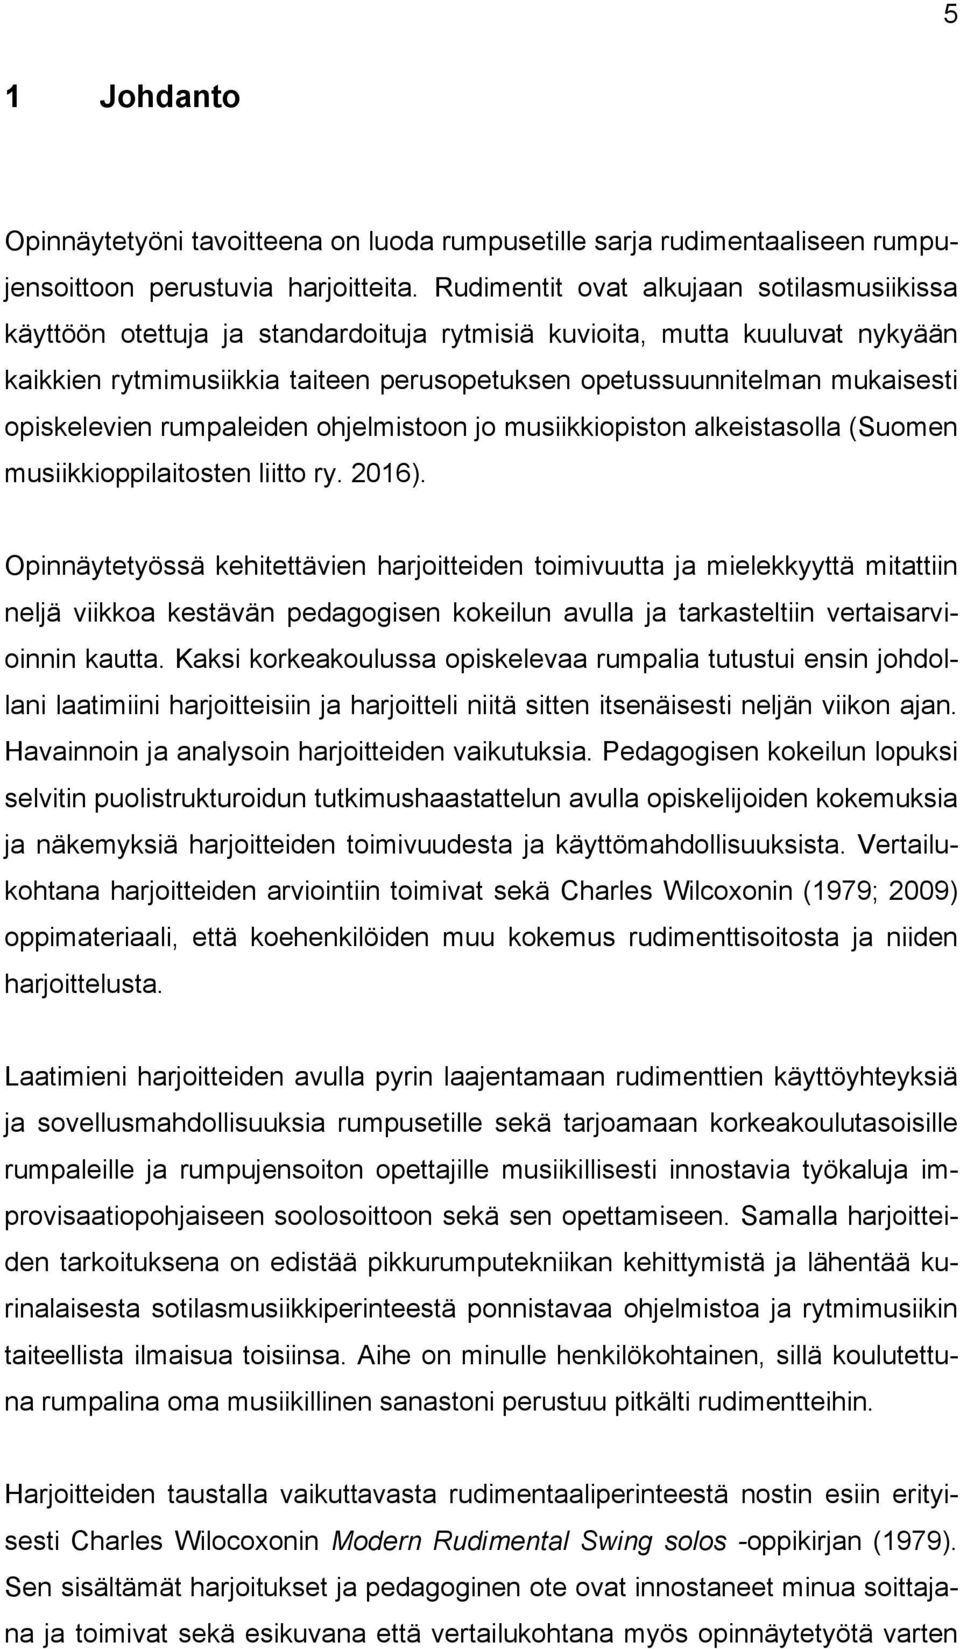 opiskelevien rumpaleiden ohjelmistoon jo musiikkiopiston alkeistasolla (Suomen musiikkioppilaitosten liitto ry. 2016).